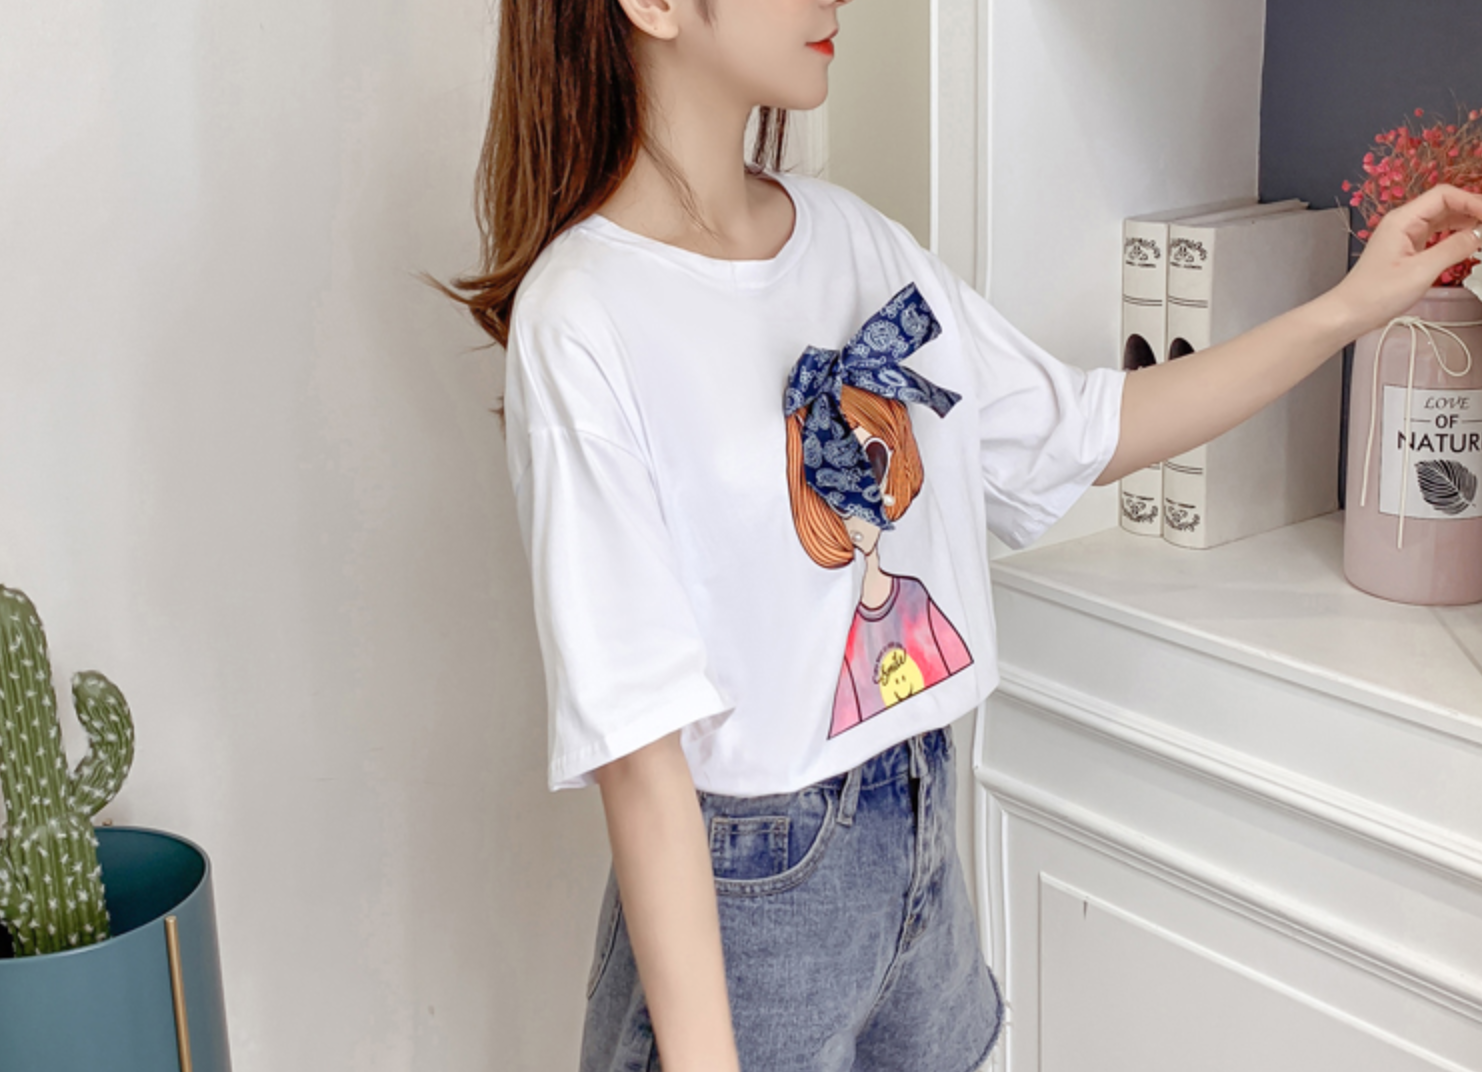 ロゴ Tシャツ かわいい 夏 カジュアル ペイズリー リボン シンプル コーデ 女の子 イラスト プリントシャツ 韓国 490 Sweetly